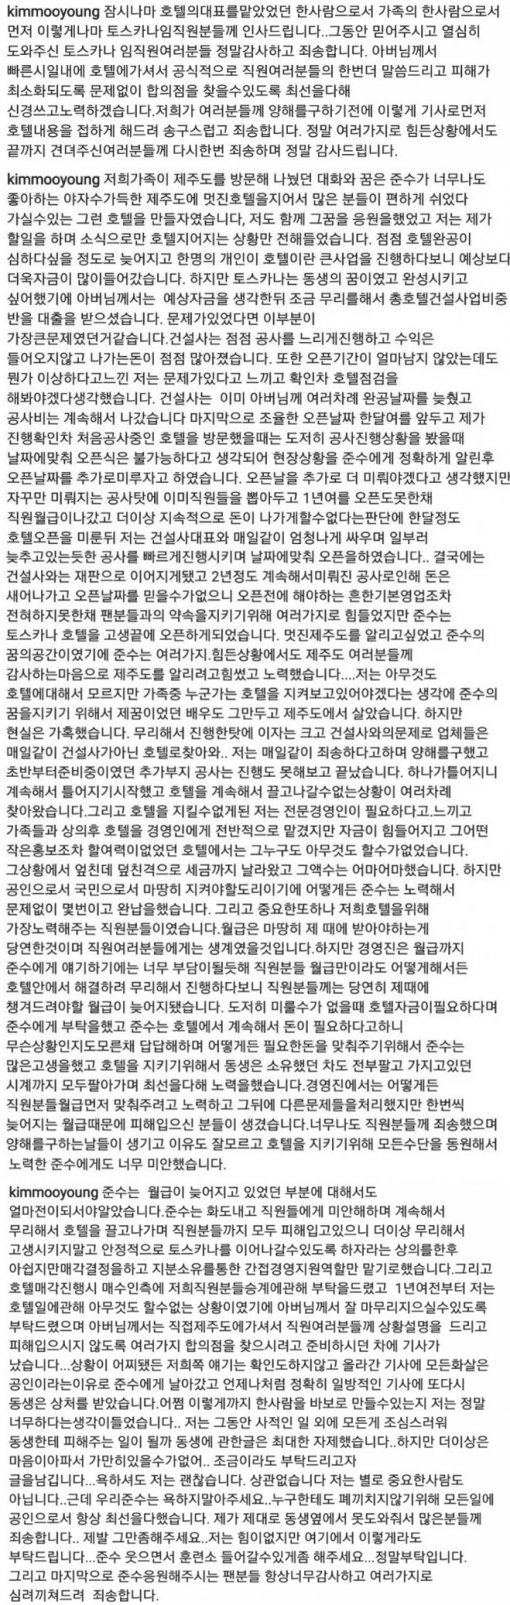 김무영이 인스타그램에 올렸다가 삭제한 글